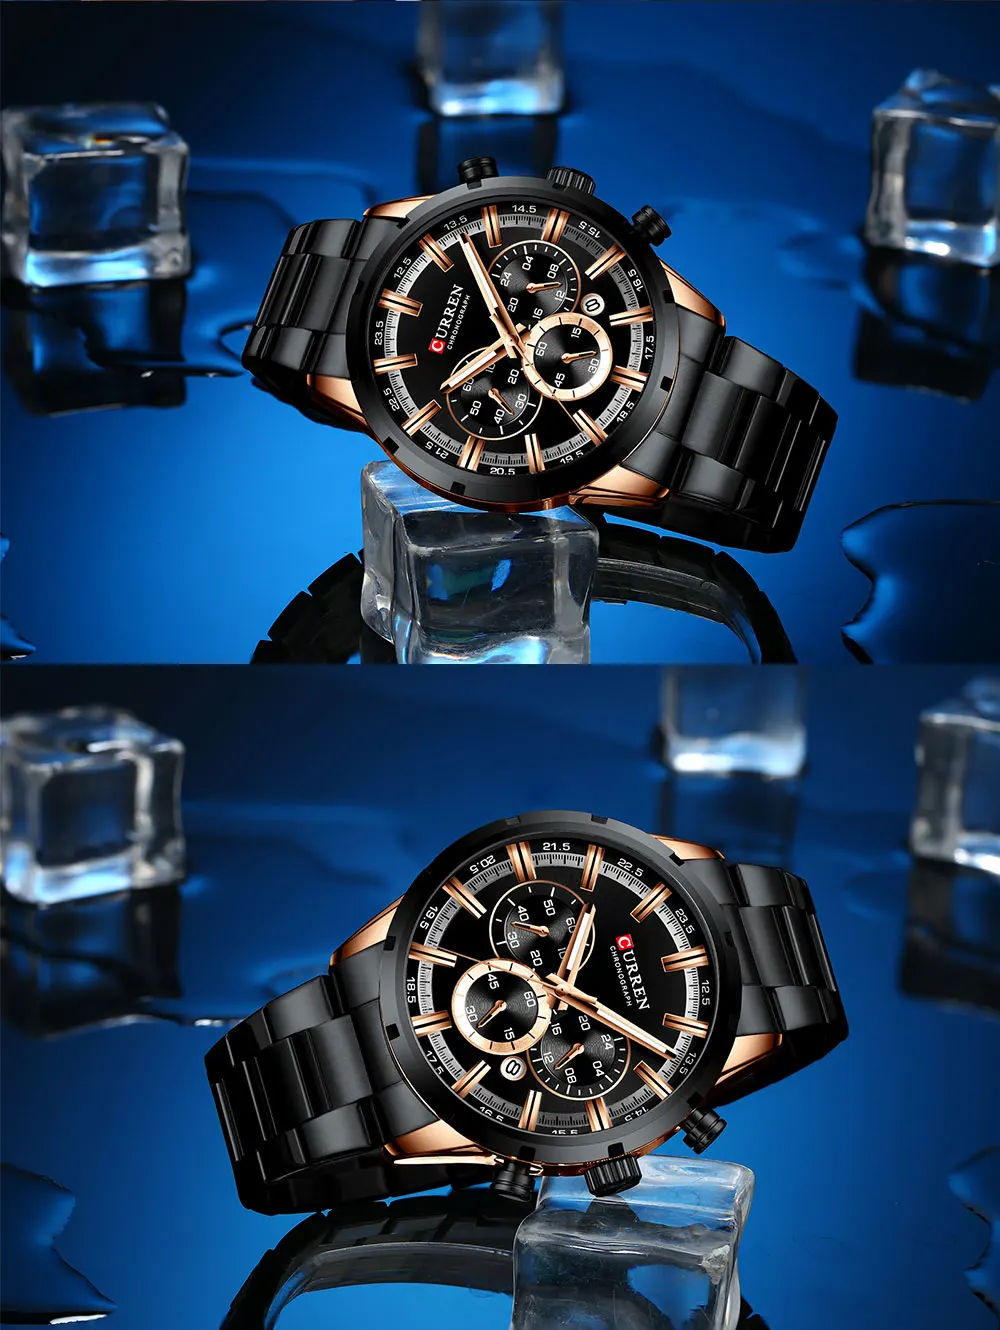 CURREN Новые спортивные мужские часы Топ бренд класса люкс кварцевые мужские часы полностью стальные водонепроницаемые наручные часы с хронографом мужские часы